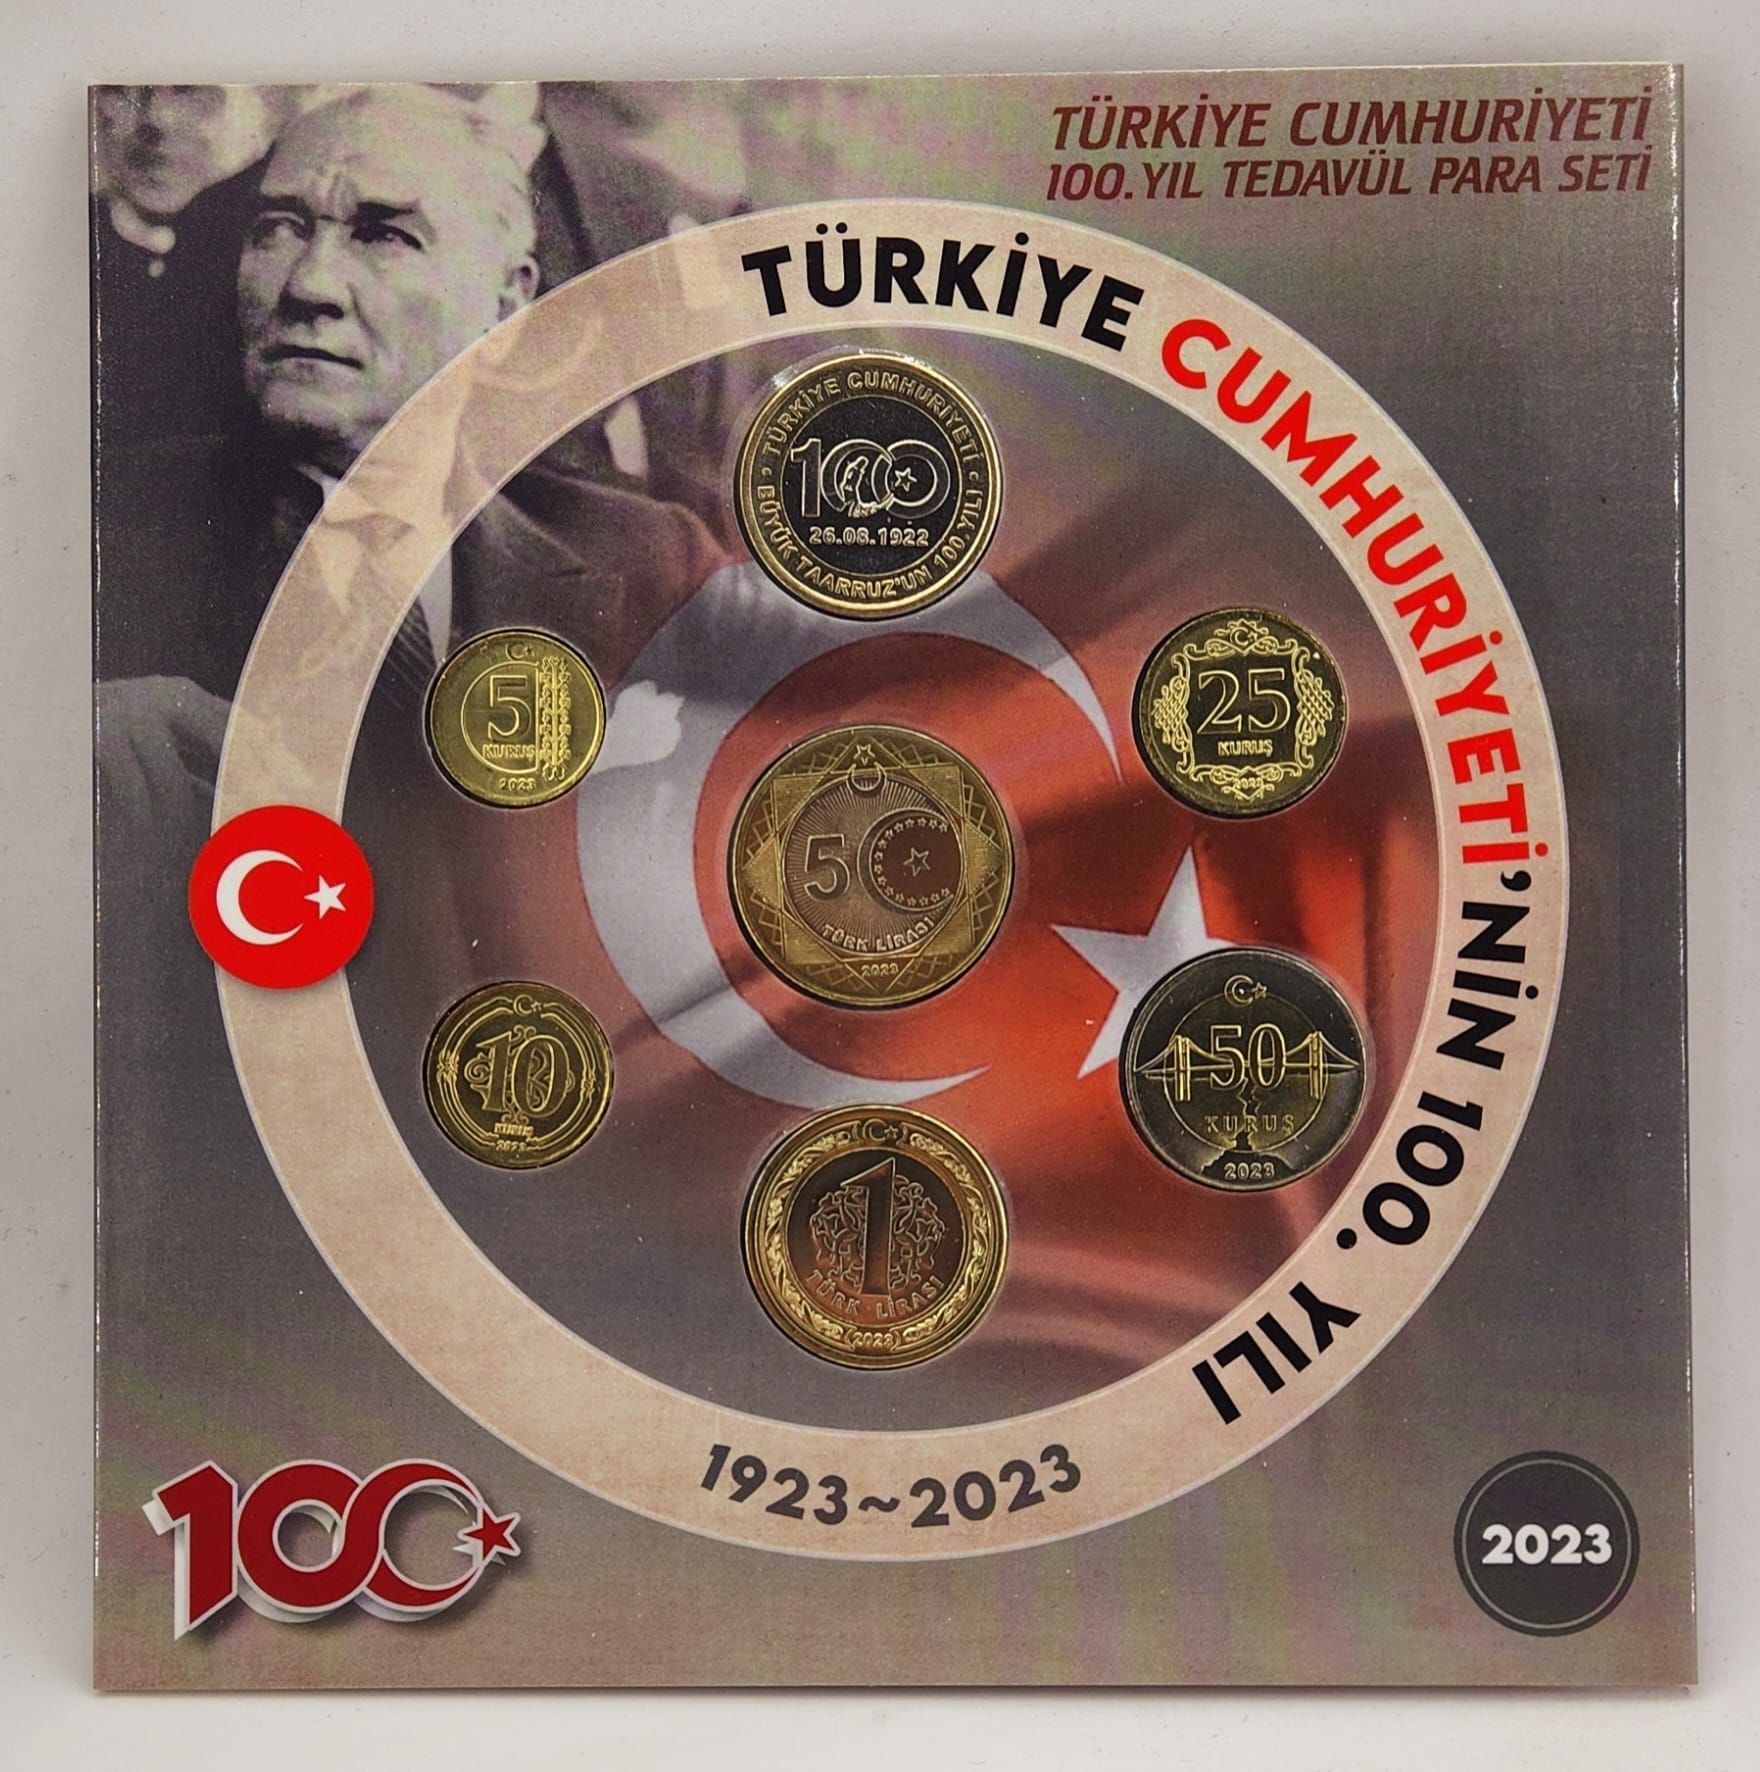 2023 Türkiye Cumhuriyeti 100.Yıl  Tedavul Hatira Seti Çil